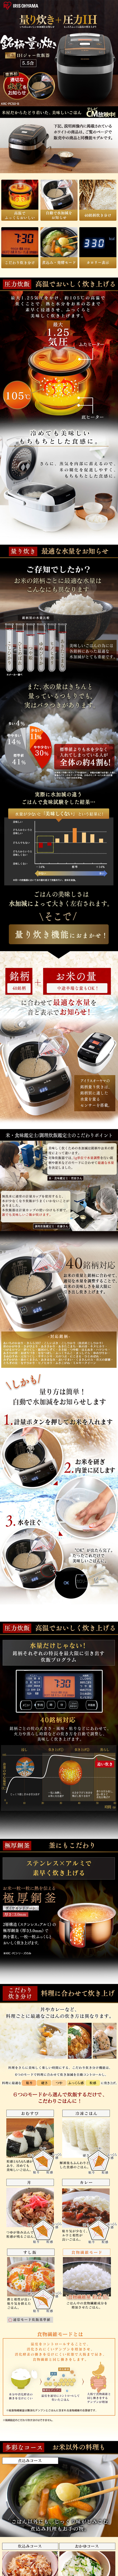 米屋の旨み 銘柄量り炊き 圧力IHジャー炊飯器5.5合 （分離なし） KRC-PC50-B_pc_1